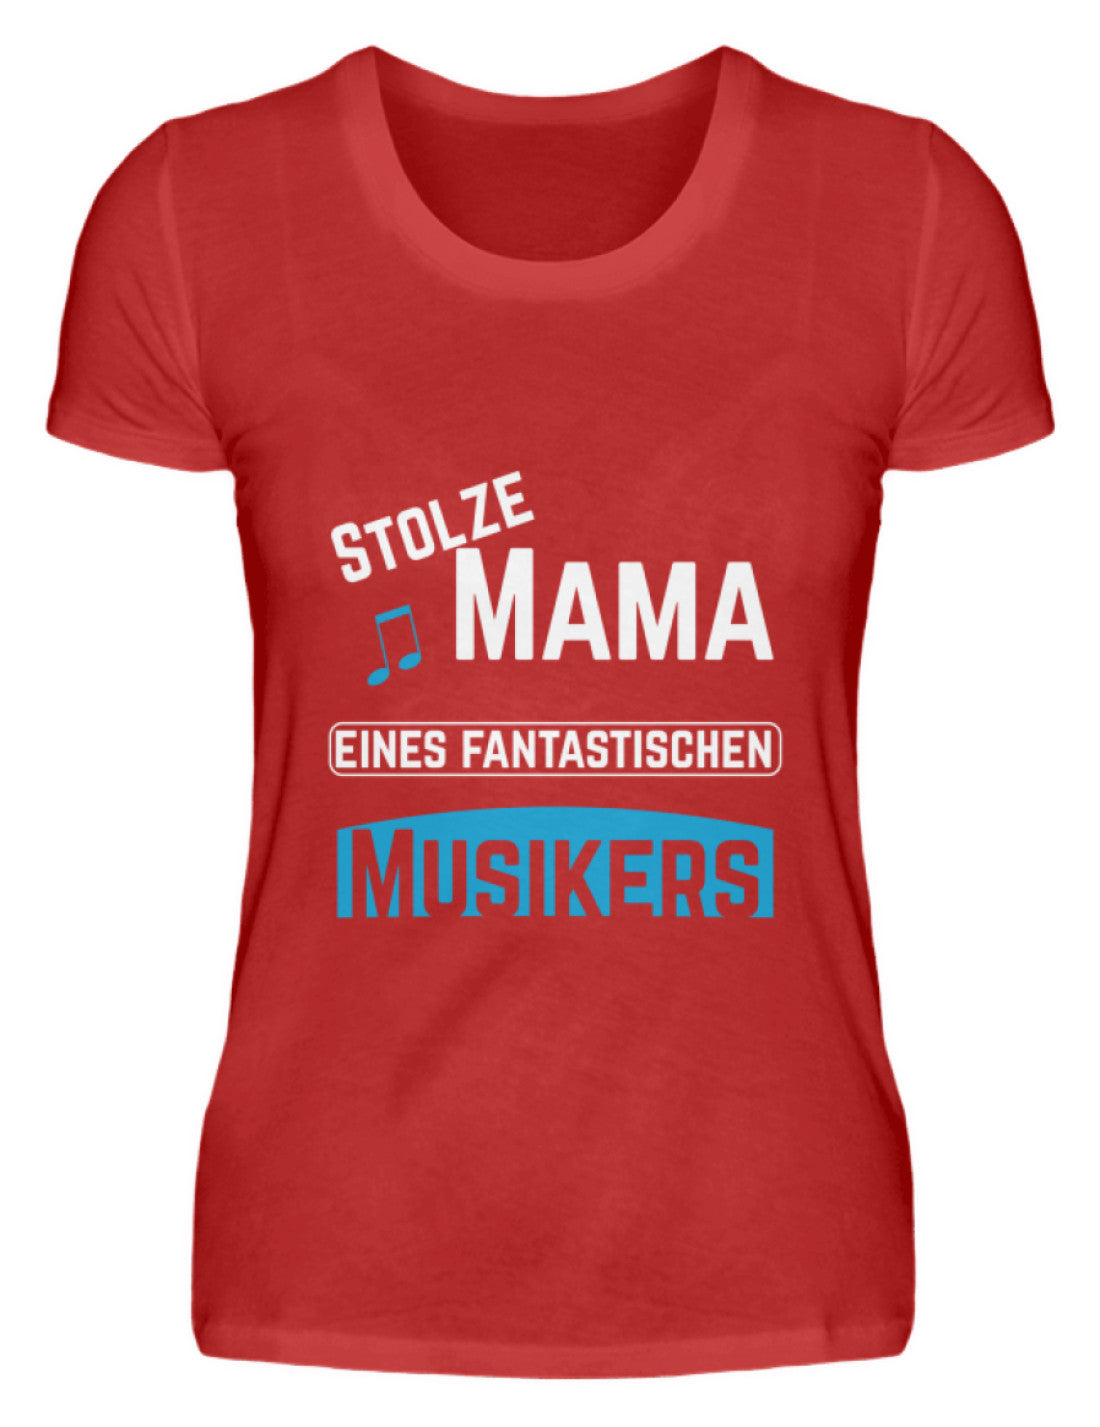 Musiker T-Shirt Muttertag Solze Mama